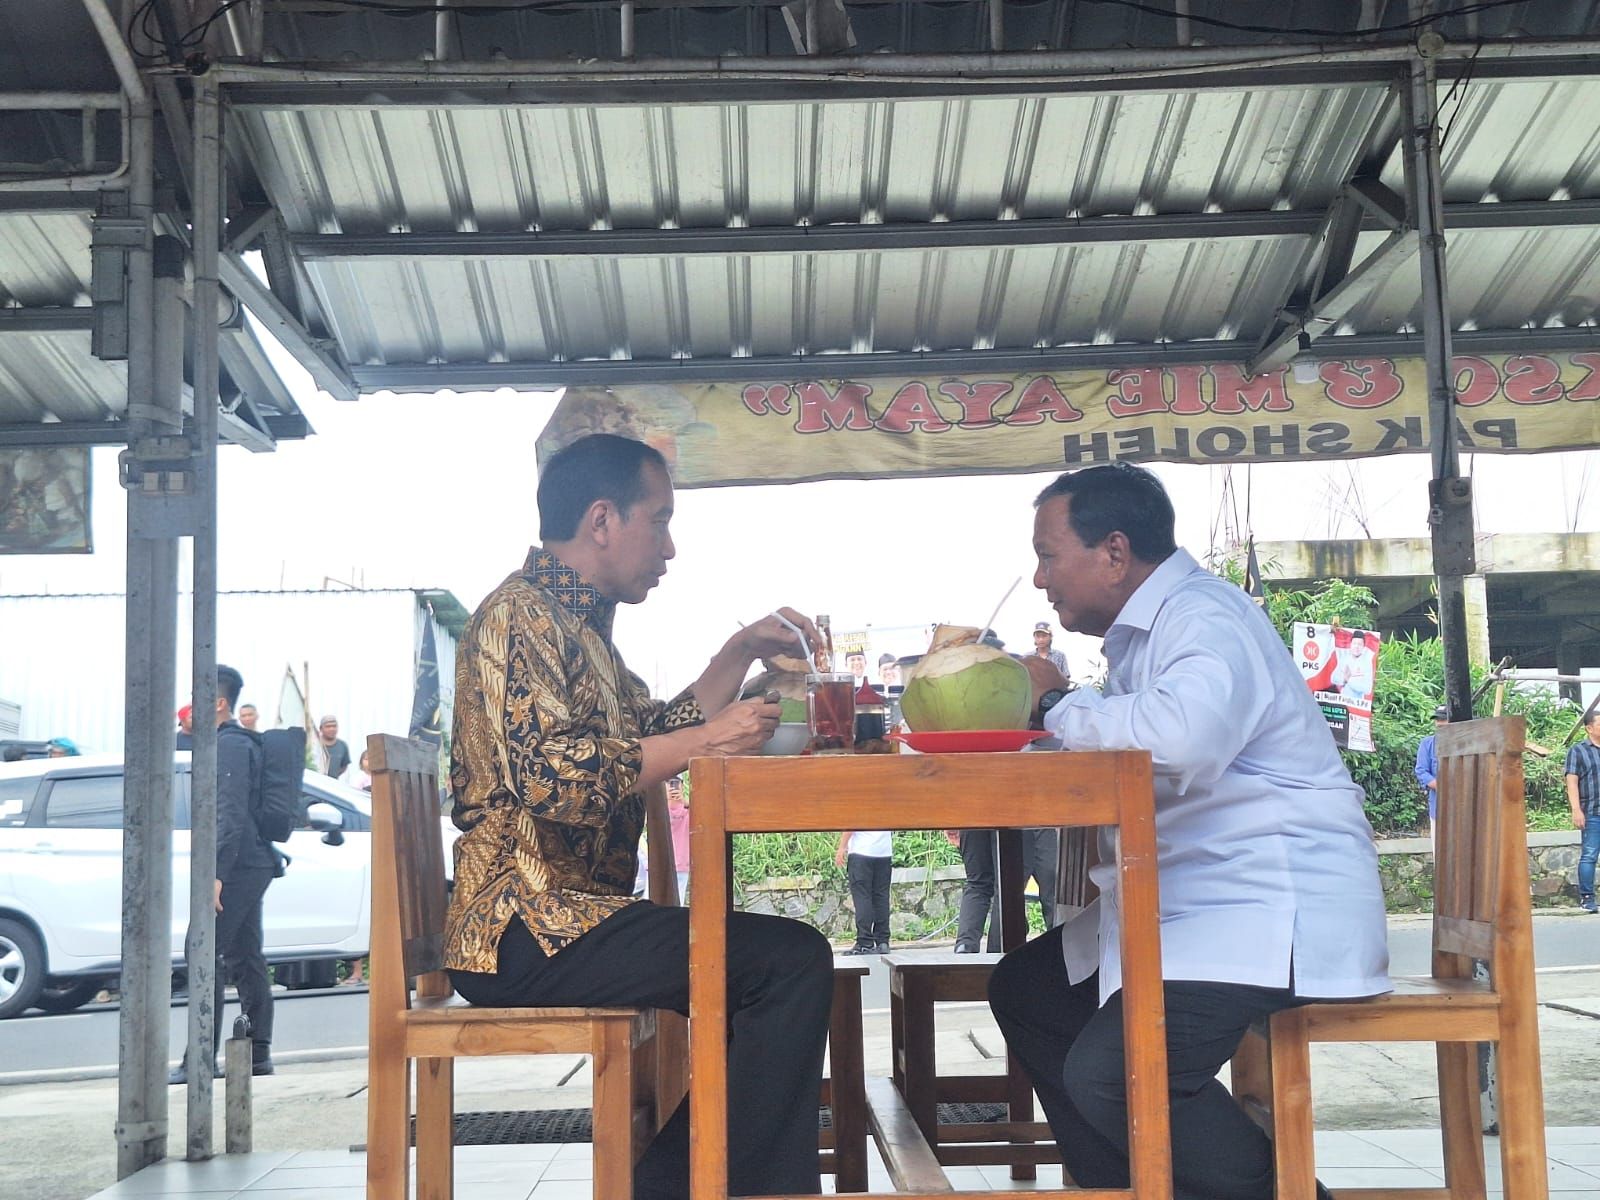 4 Kali Maju Pilpres serta Sosok Jokowi Dinilai Jadi Faktor Keunggulan Prabowo